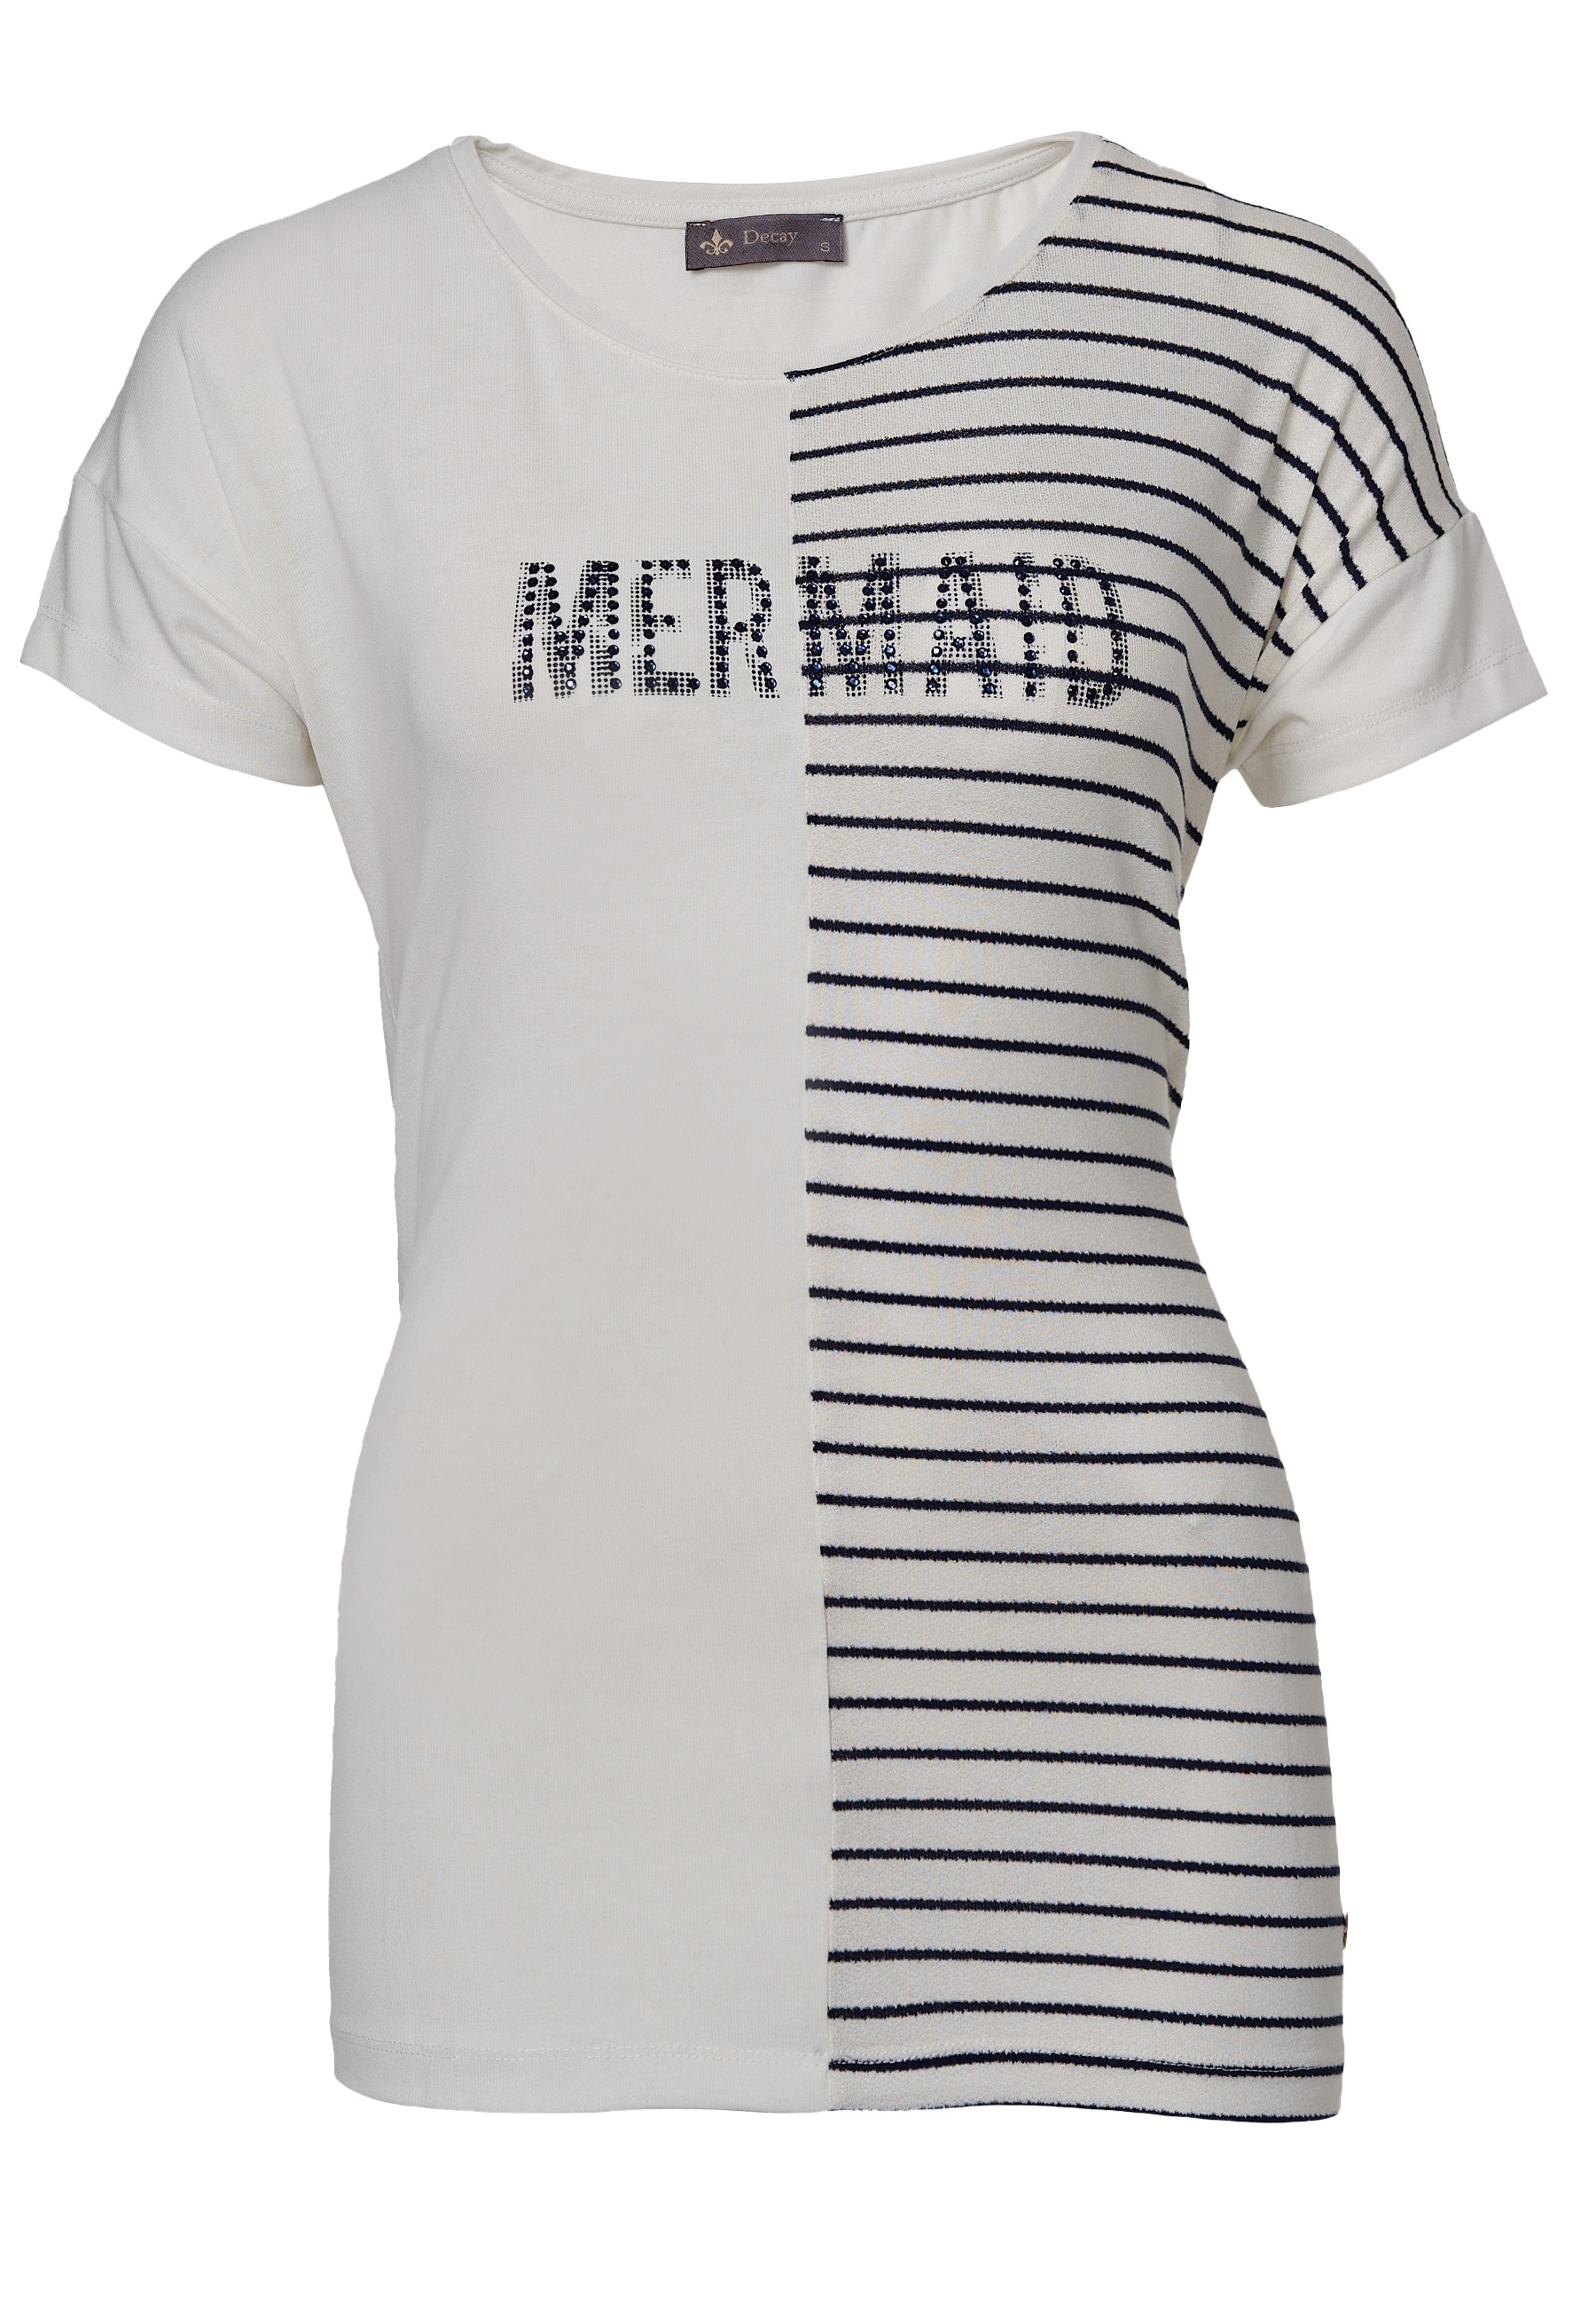 Decay T-Shirt, modischem shoppen mit Streifendesign